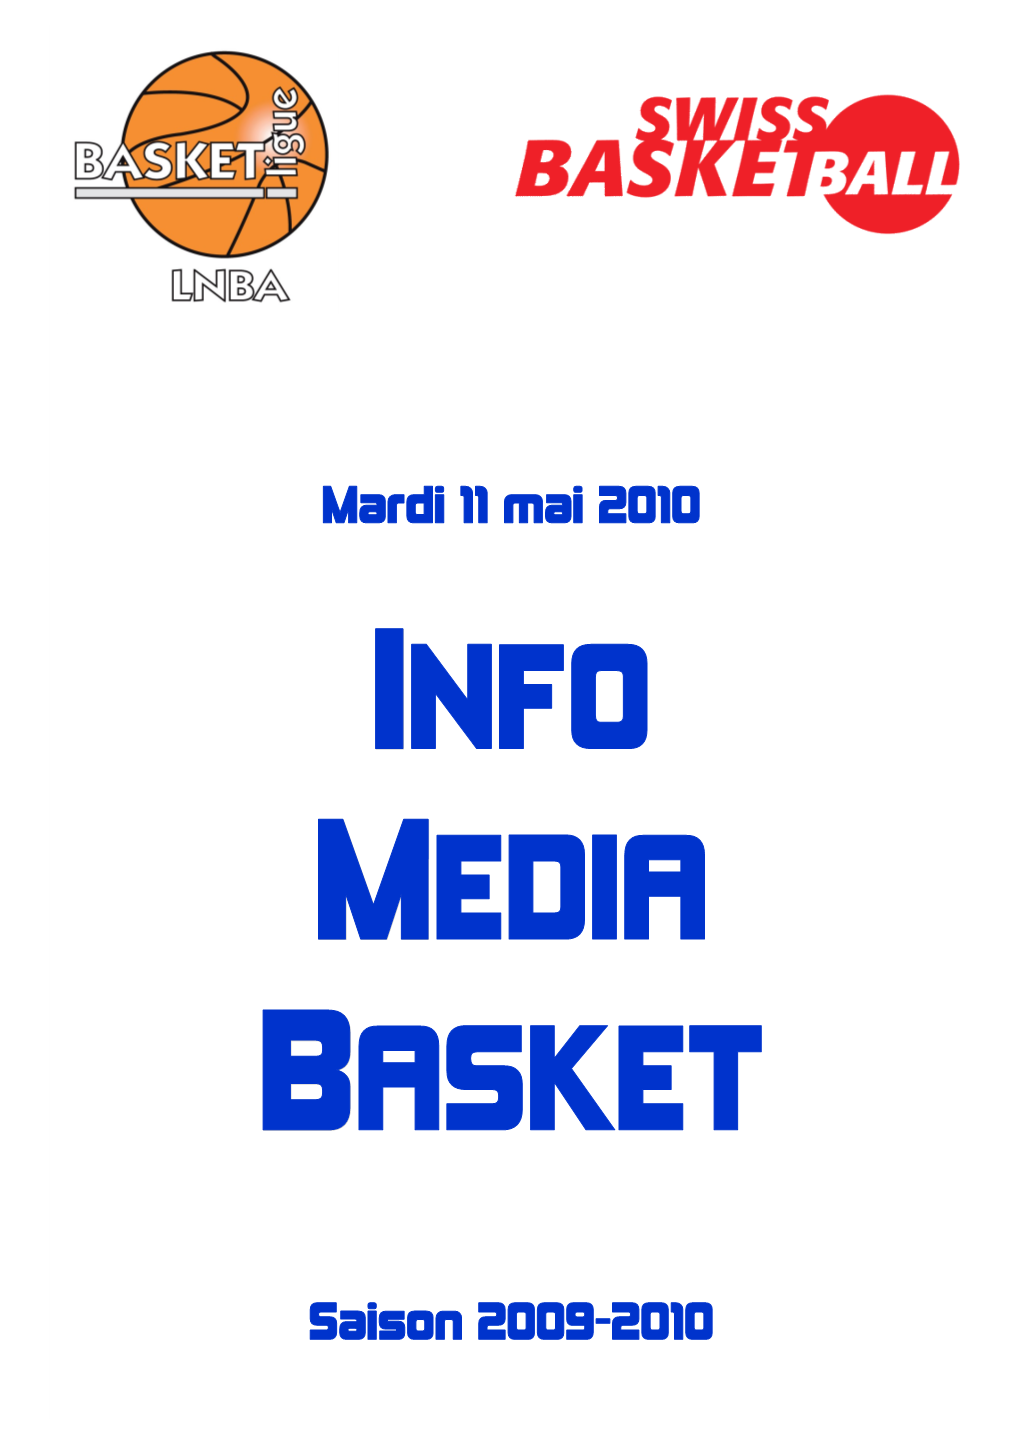 Mardi 11 Mai 2010 Saison 2009-2010